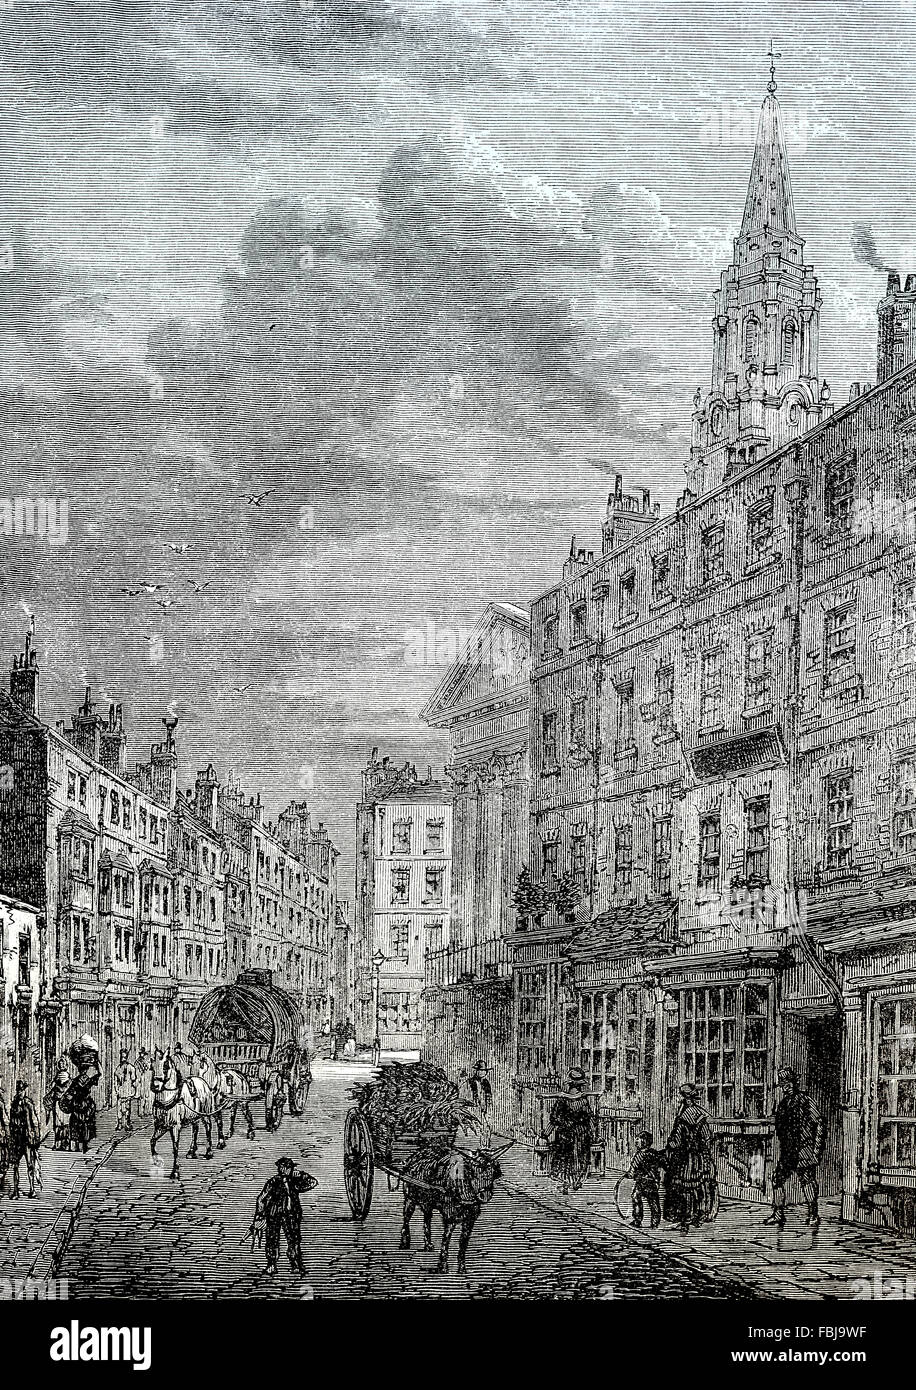 St Martin's Lane, 1820, une rue de Covent Garden, Londres, Angleterre Banque D'Images